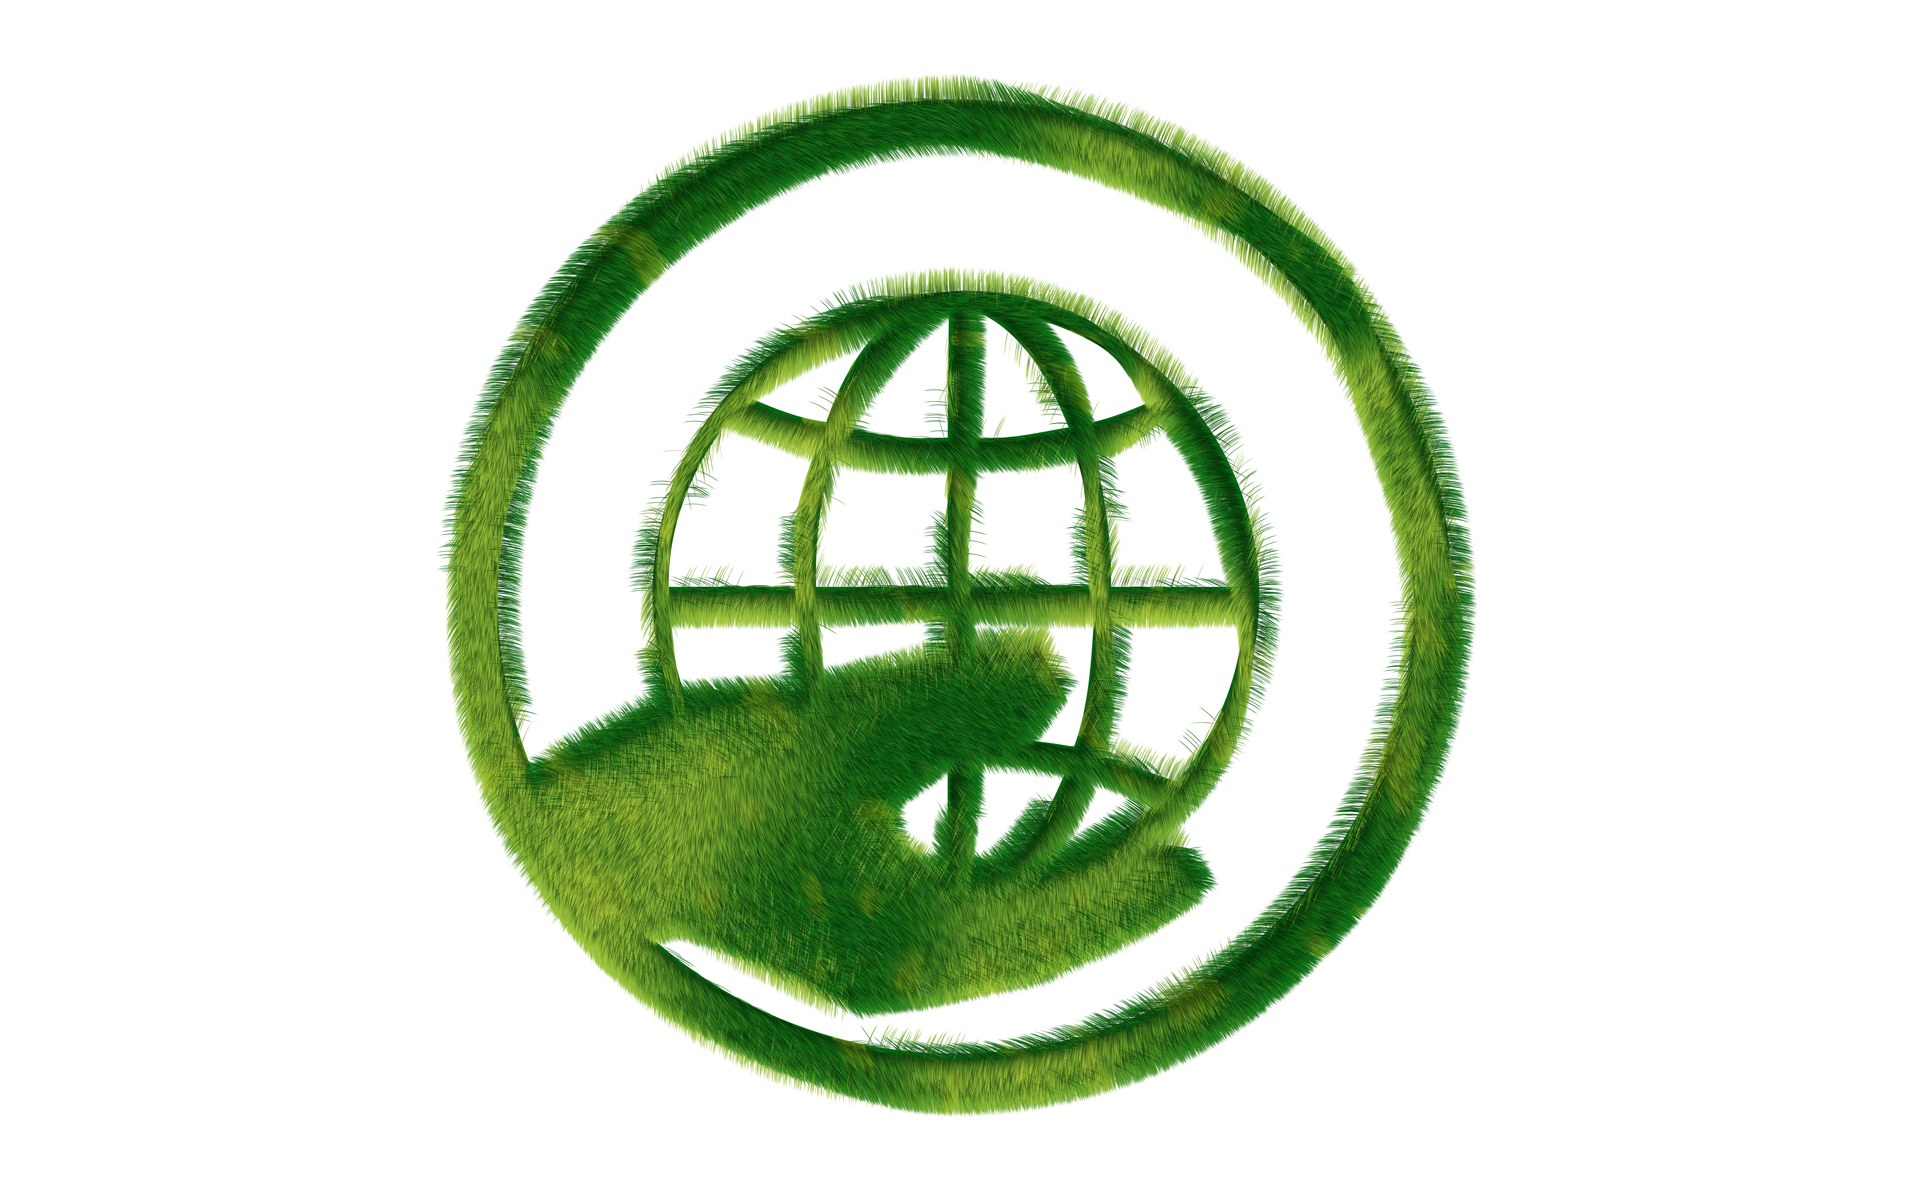 壁纸1920x1200 地球生态 草地组成的绿色环保标志图片 1920 1200壁纸 绿色和平环保标志-循环利用壁纸 绿色和平环保标志-循环利用图片 绿色和平环保标志-循环利用素材 插画壁纸 插画图库 插画图片素材桌面壁纸